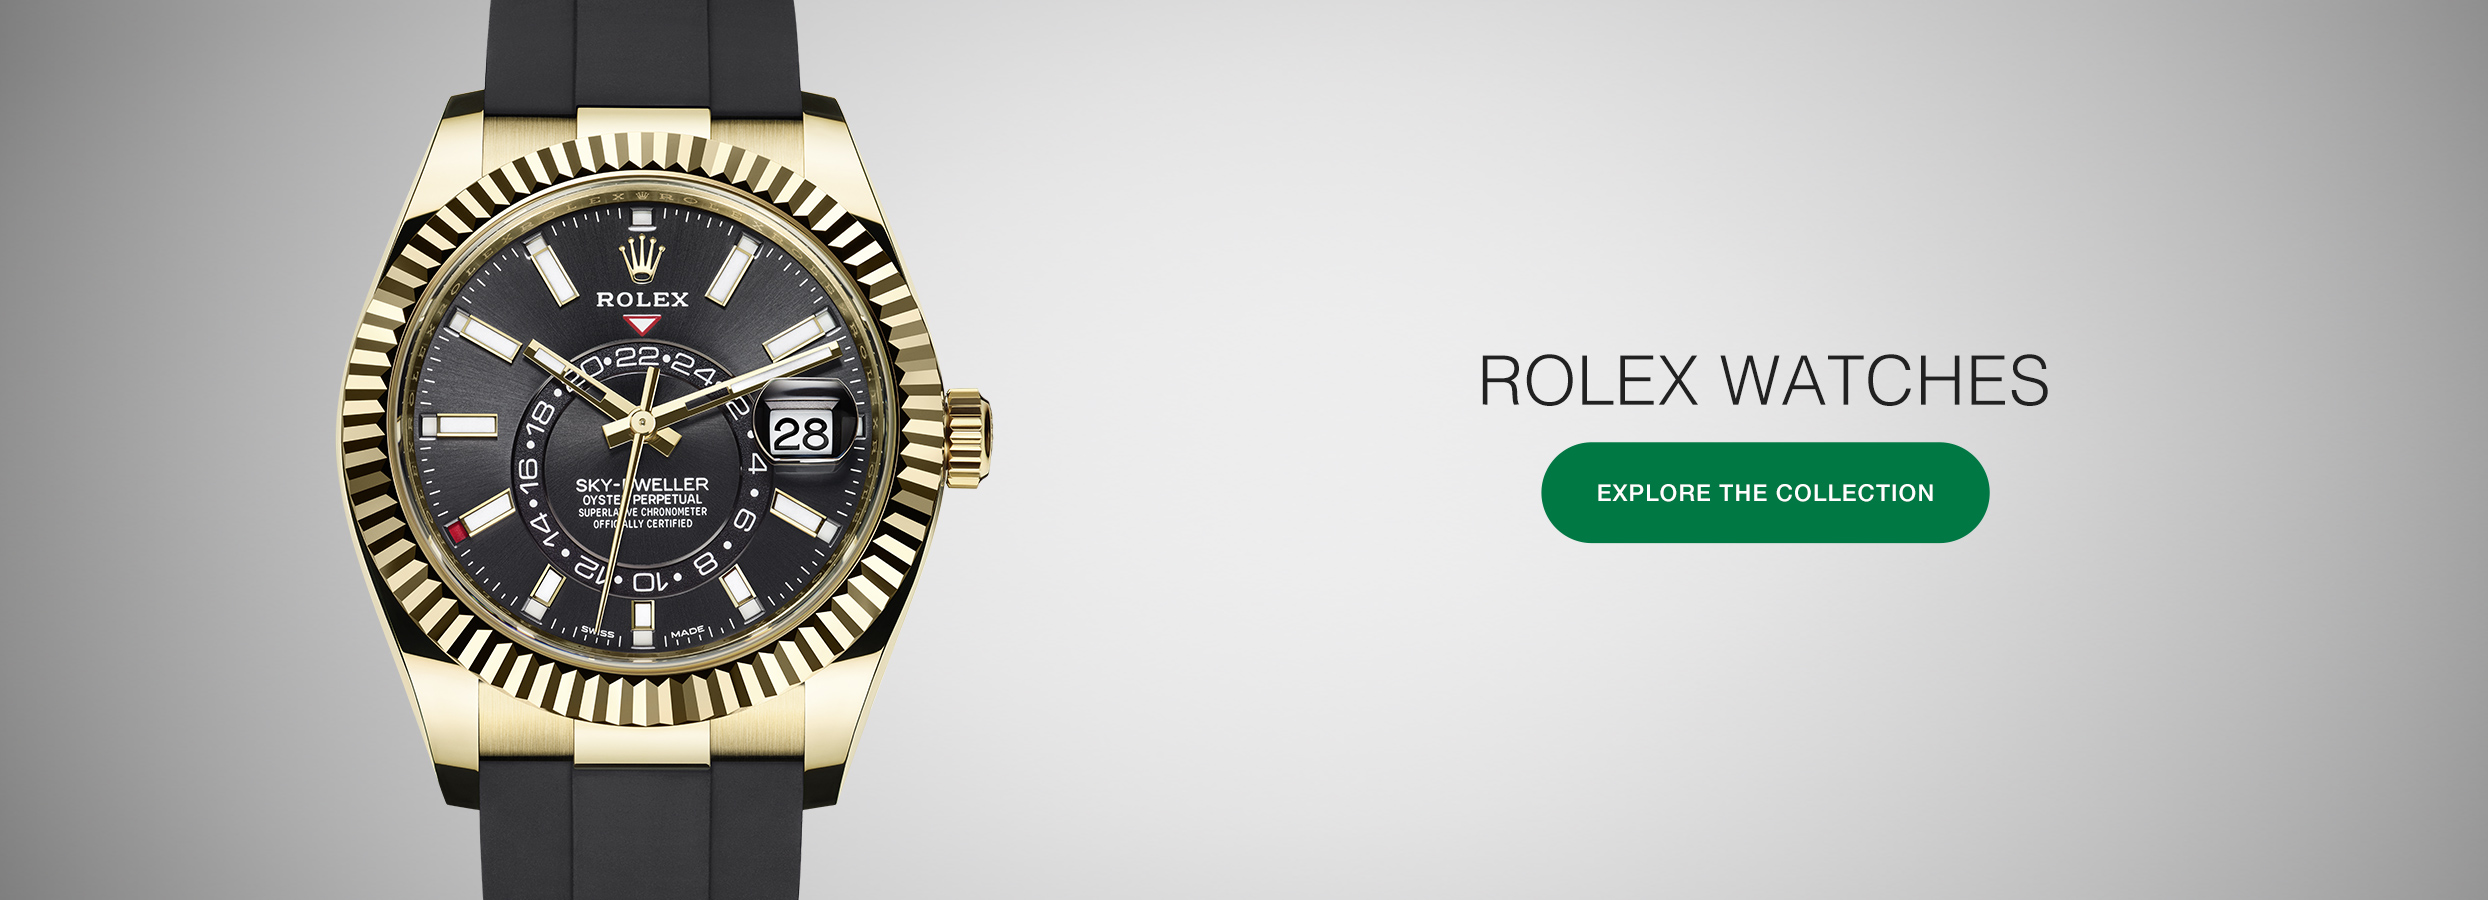 Rolex Day-Date